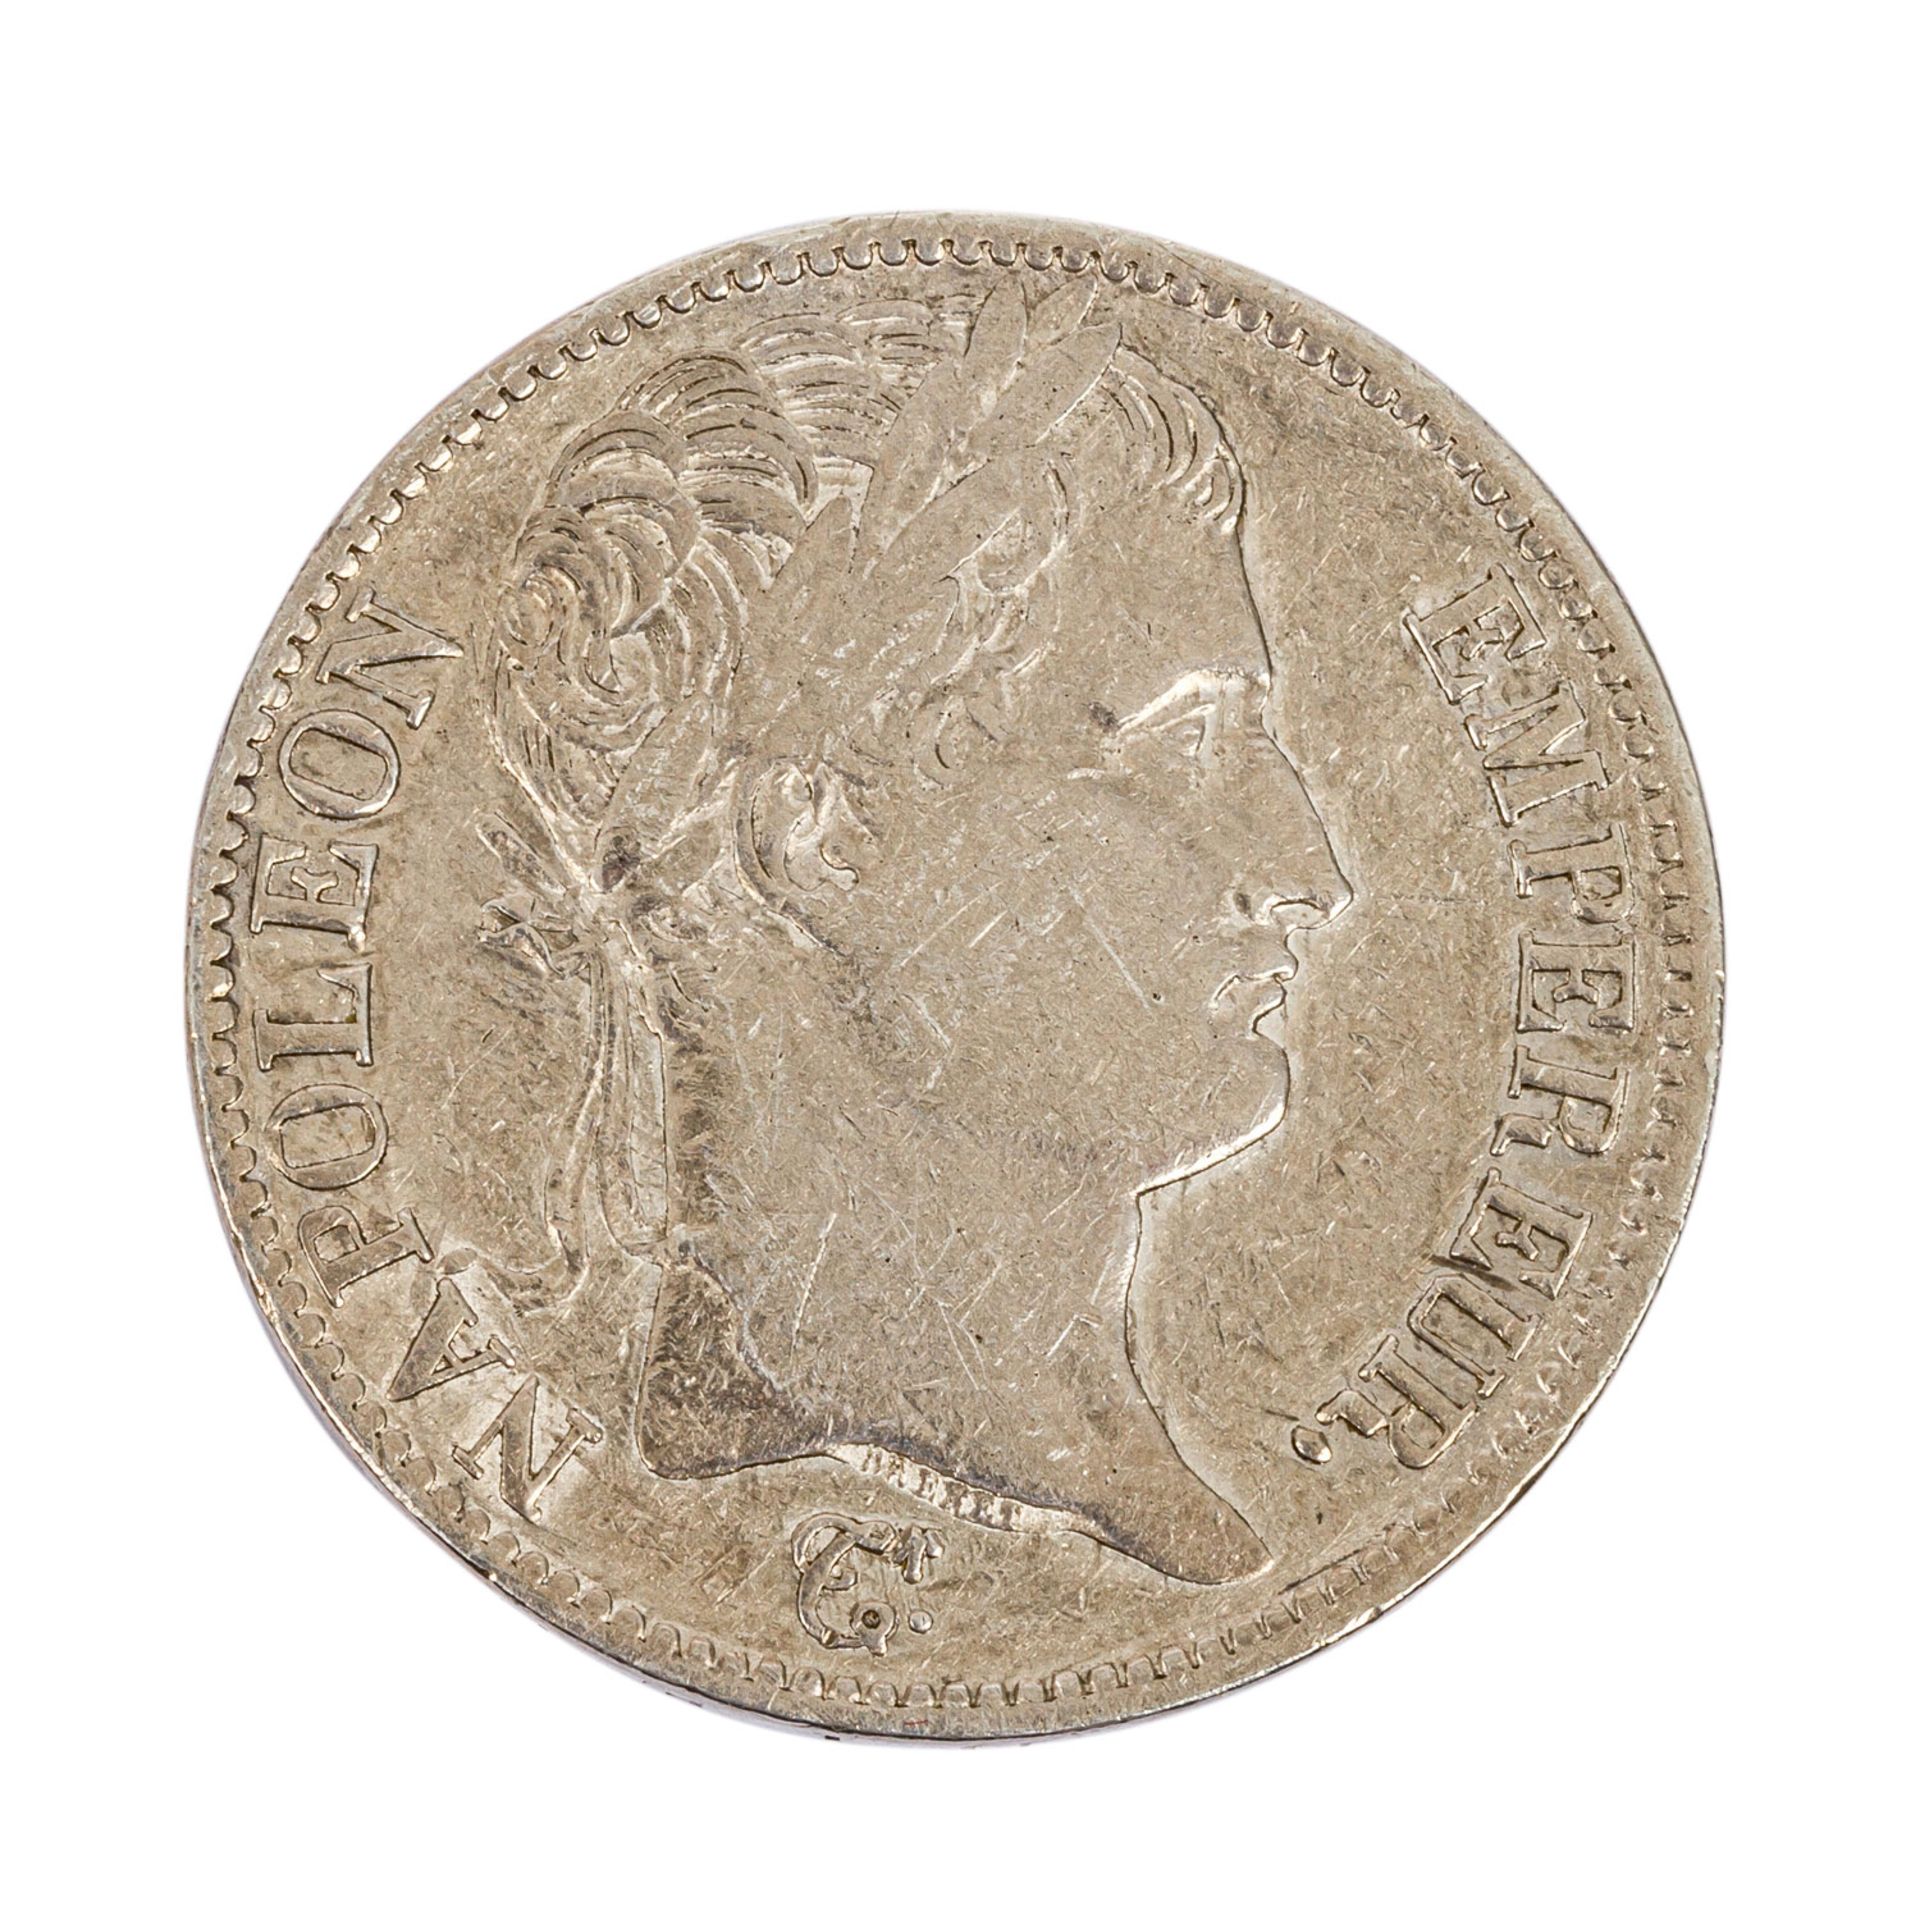 Frankreich - 5 Francs 1811/A, Paris, Silber, ss, wohl etwas gereinigt. France - 5 francs 1811/A,